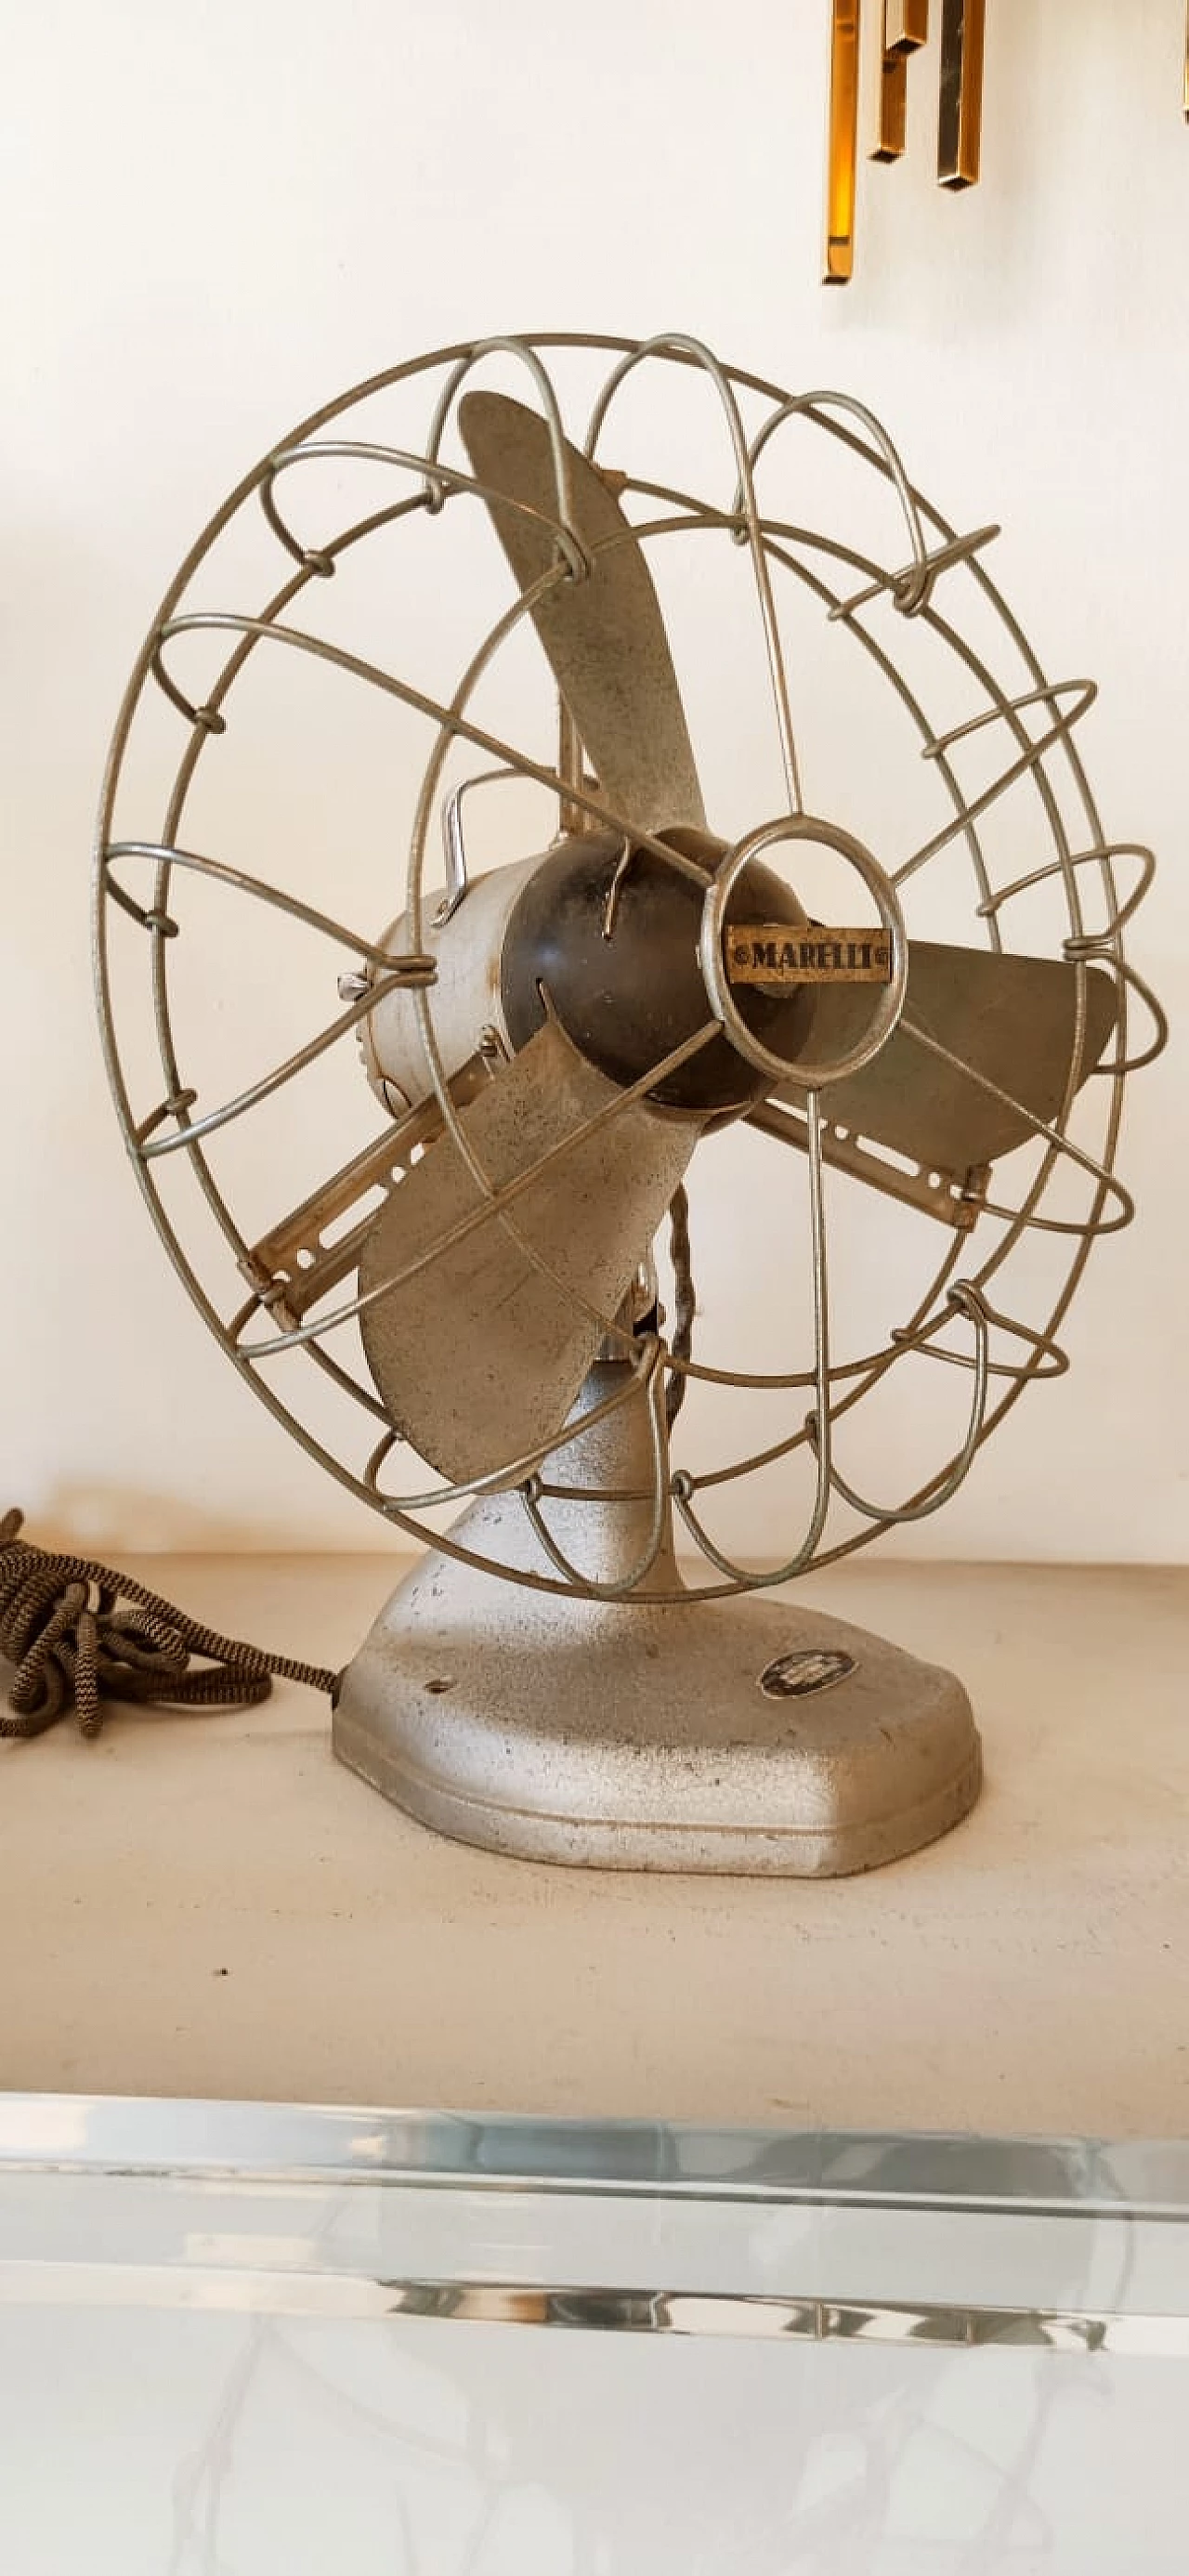 Ventilatore di Ercole Marelli, anni '50 19